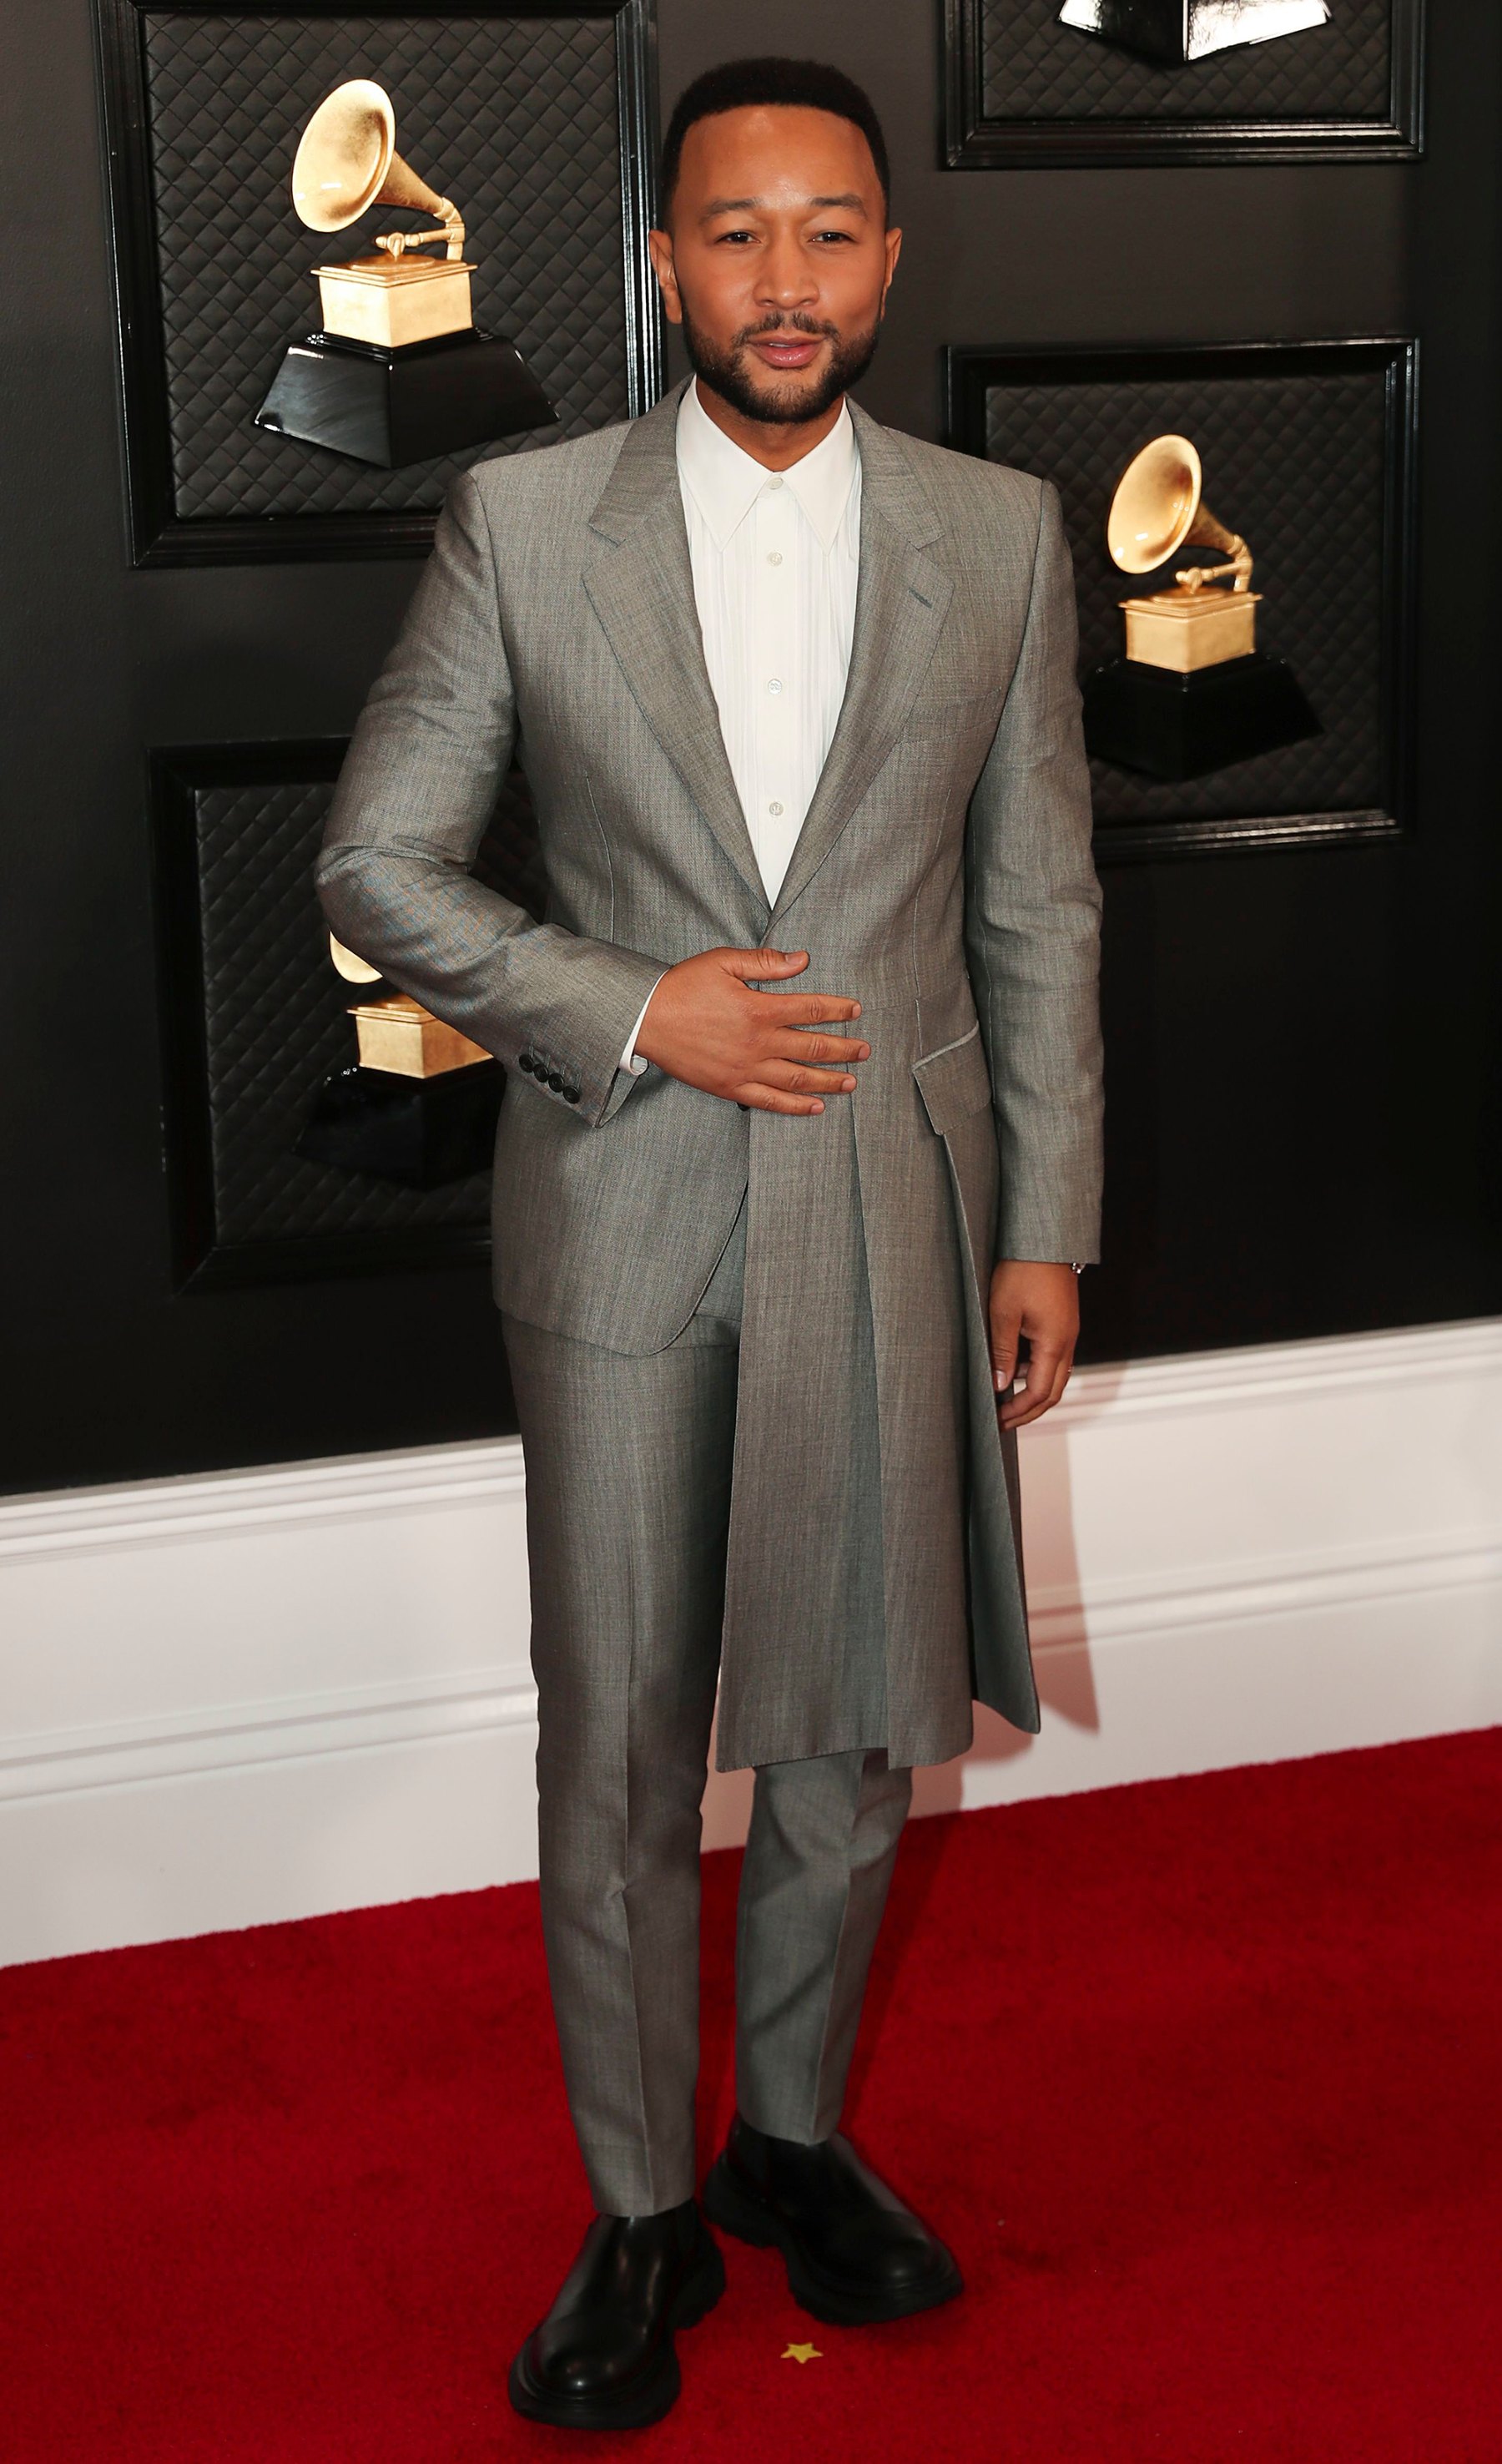 Grammys 2020 BestDressed Men in Tuxedos, Suits